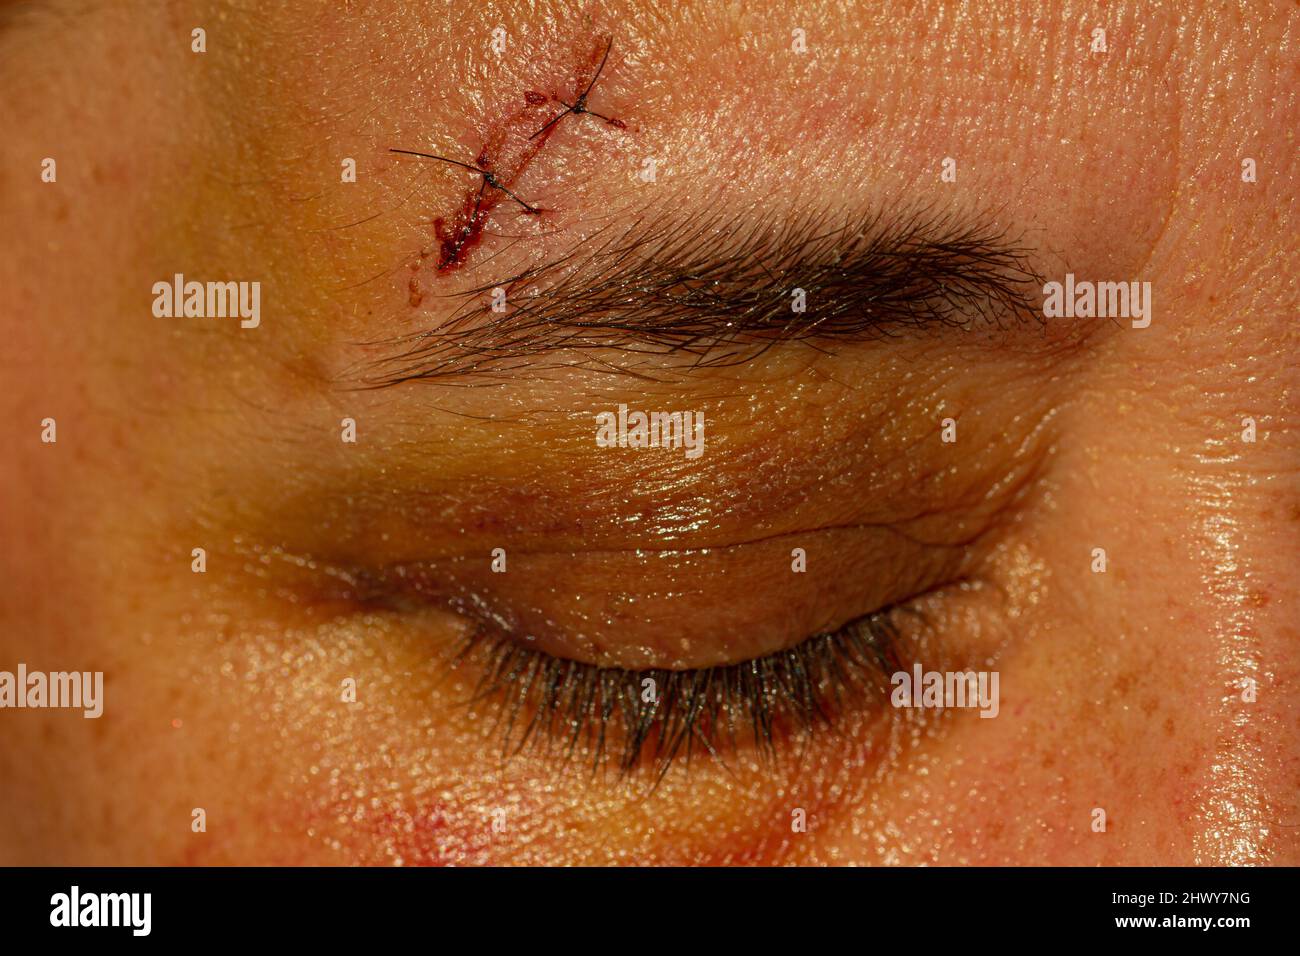 Donna bianca di mezza età con punti sopra il suo occhio a causa di una caduta. Foto Stock